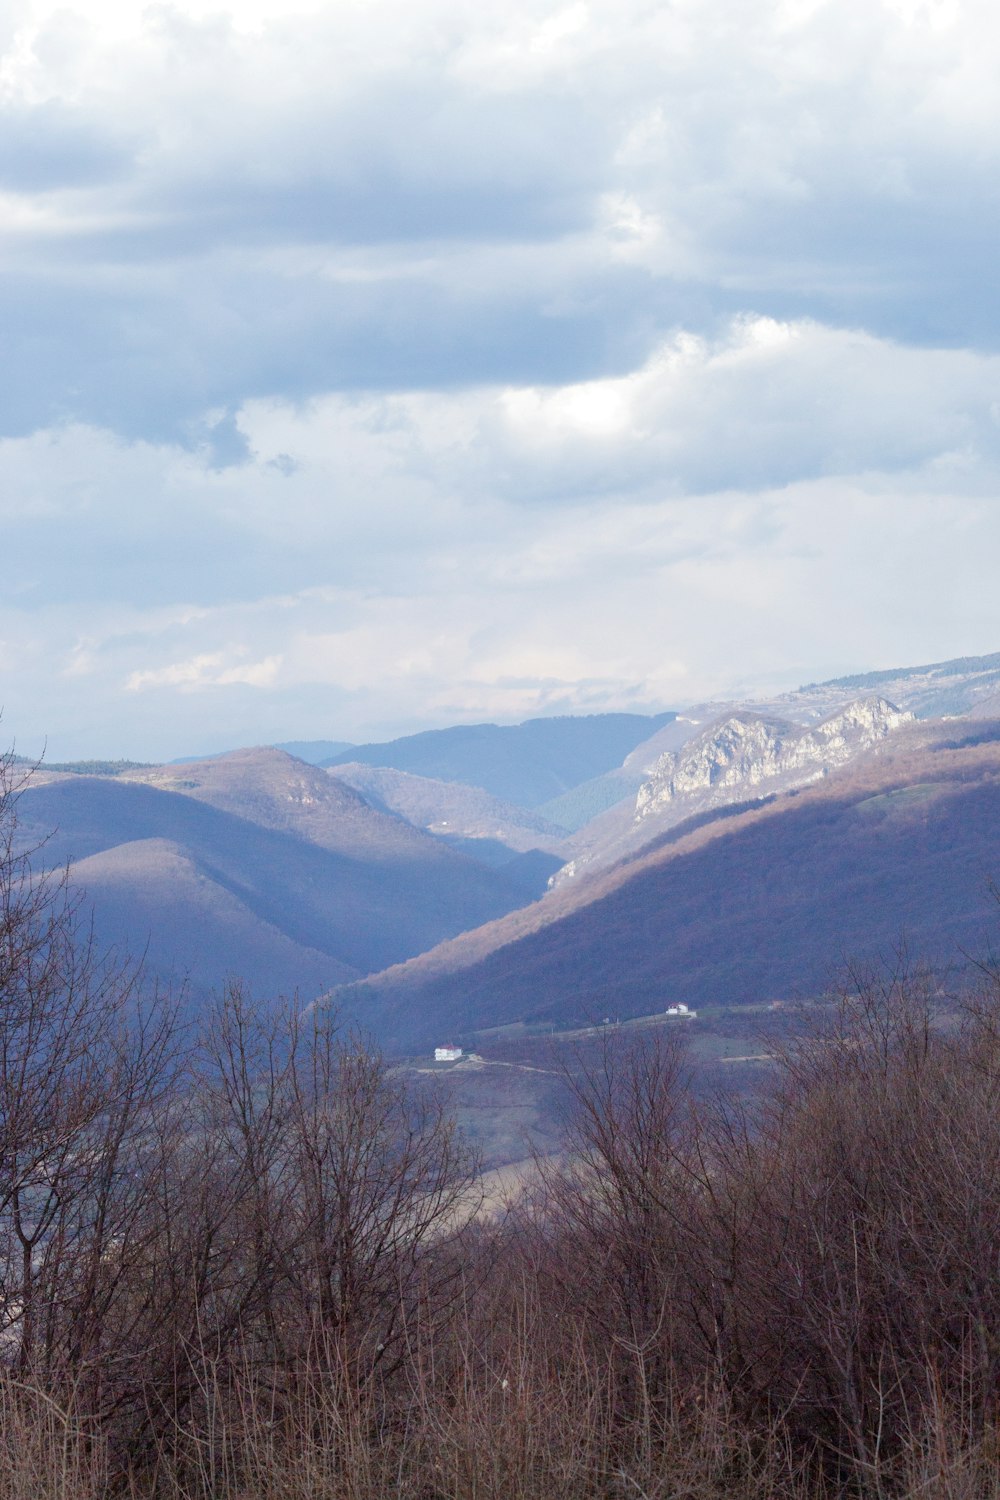 Una vista de un valle con montañas al fondo